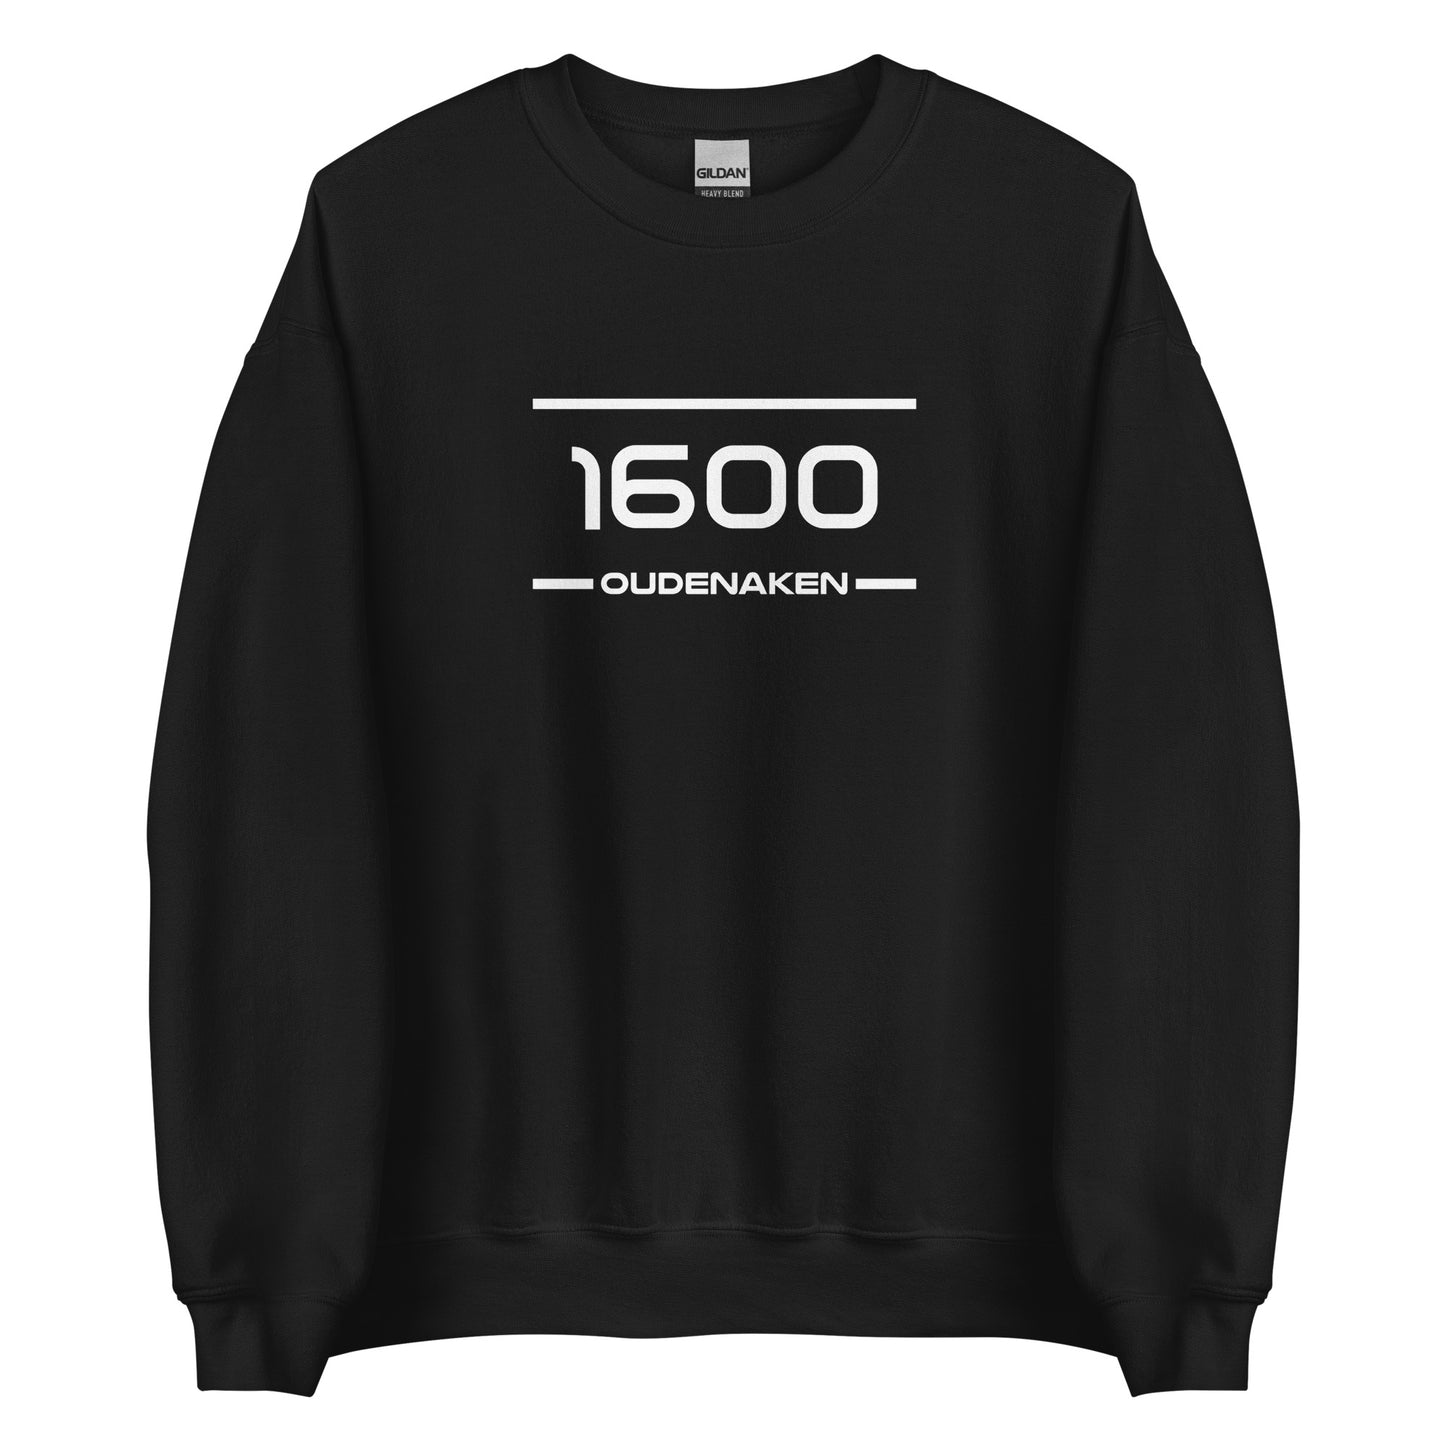 Sweater - 1600 - Oudenaken (M/V)